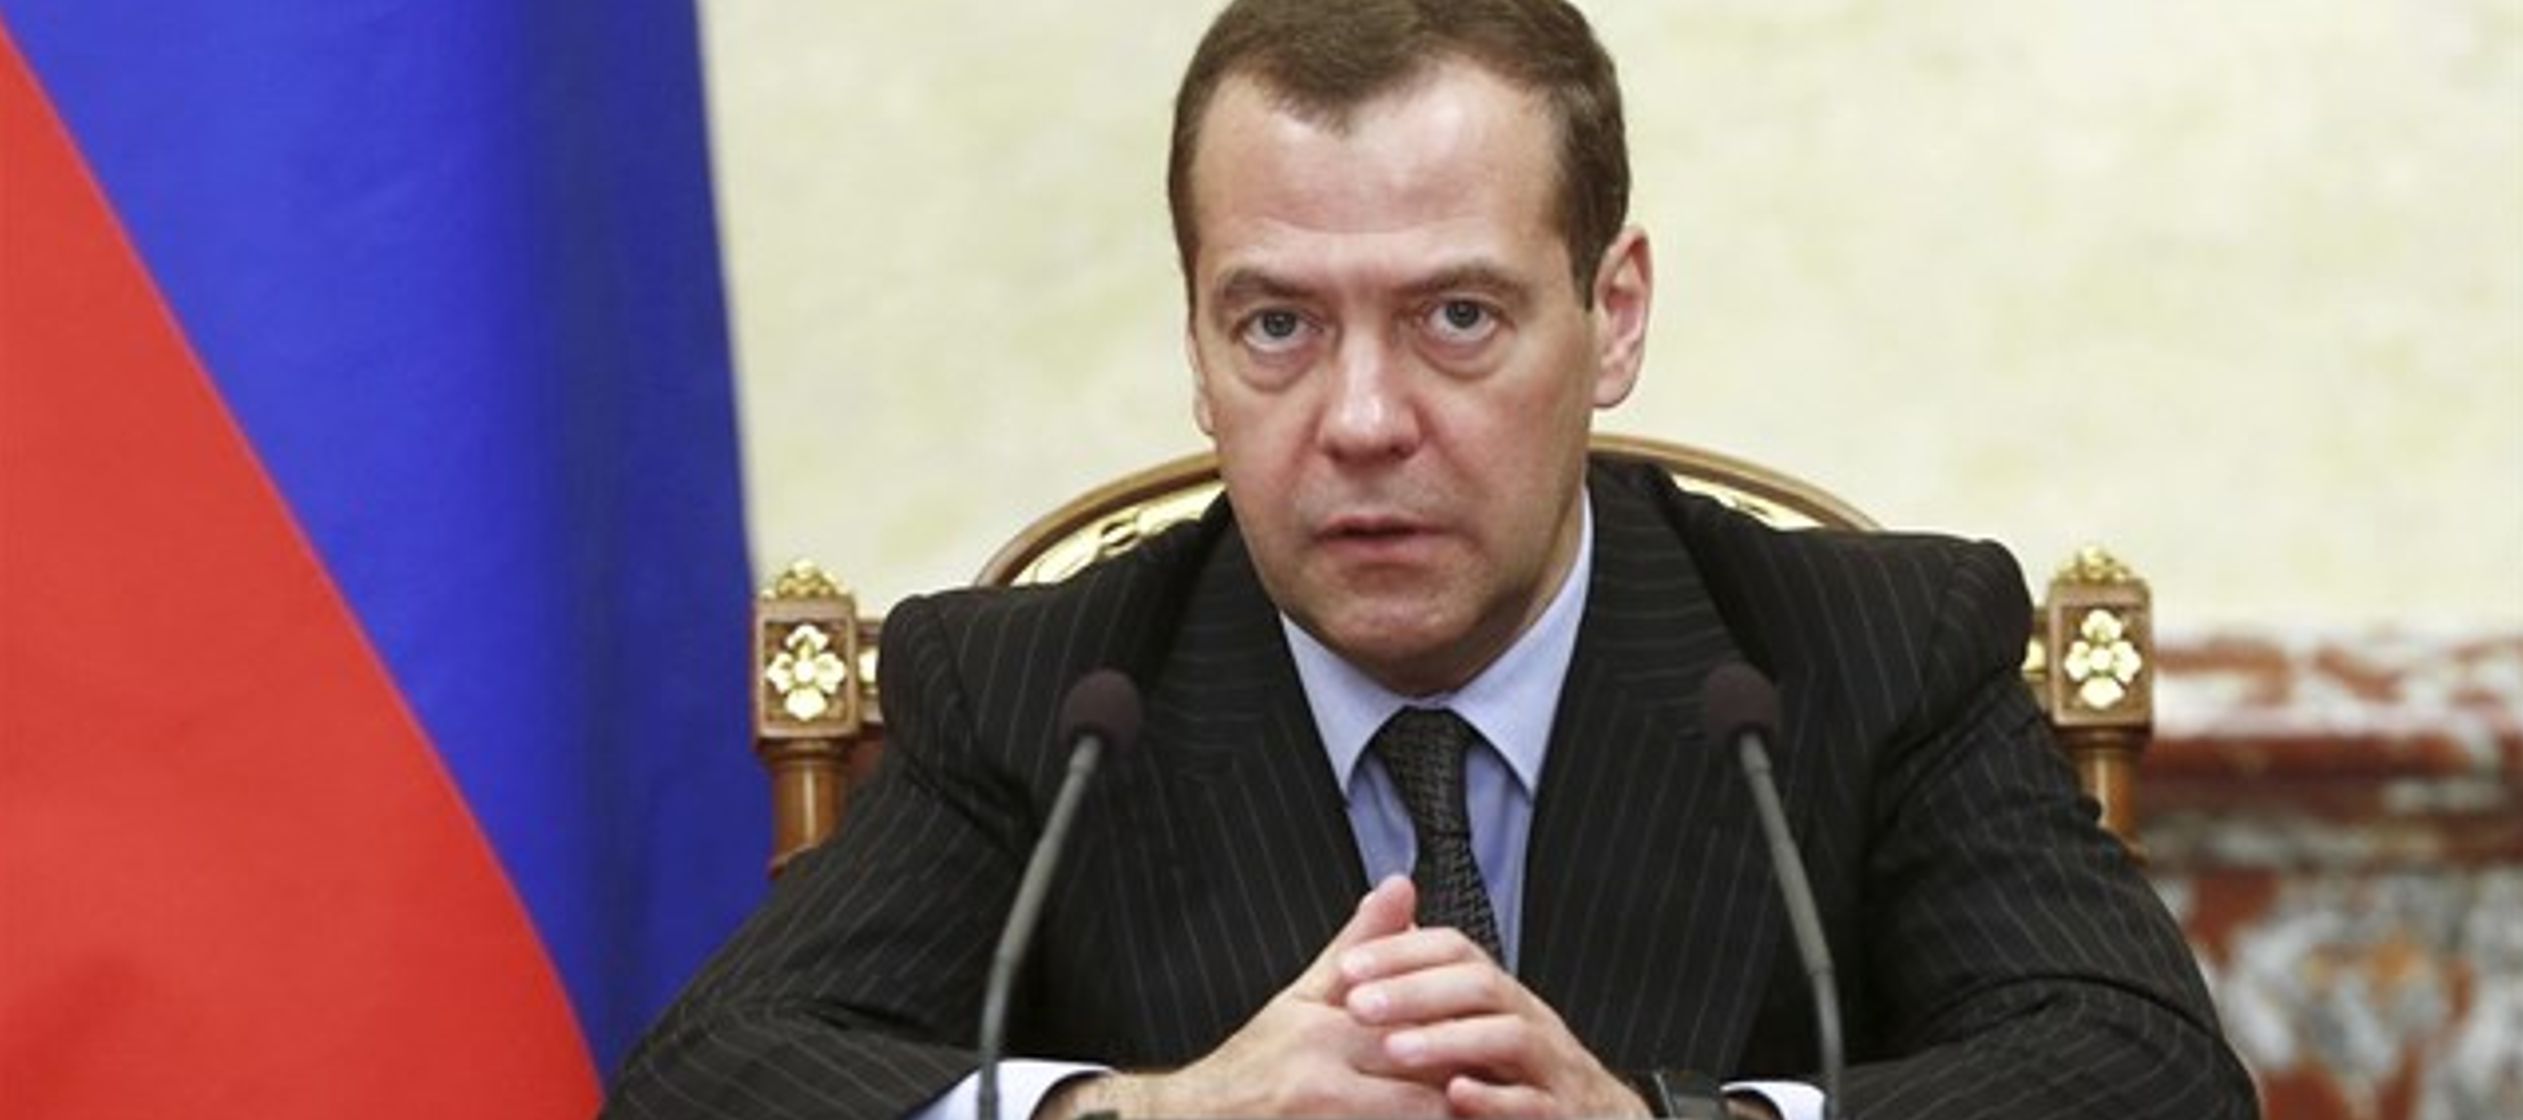 "Podría provocar un terrible conflicto", ha dicho Medvedev a la emisora rusa...